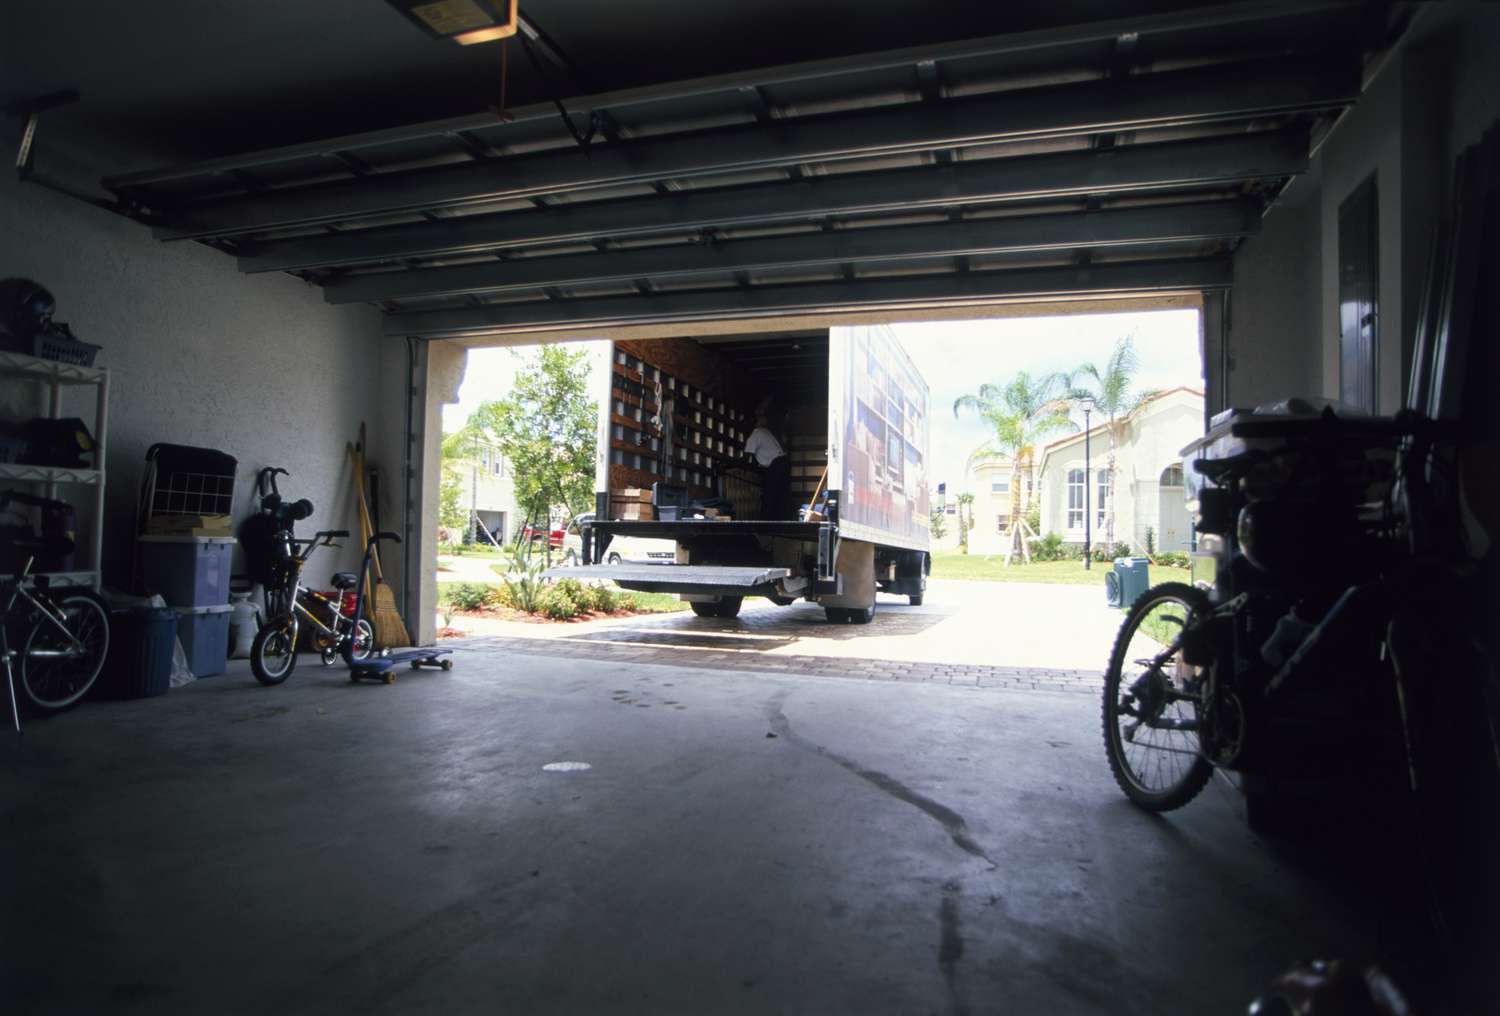 Garage Interior with Cracked Slab